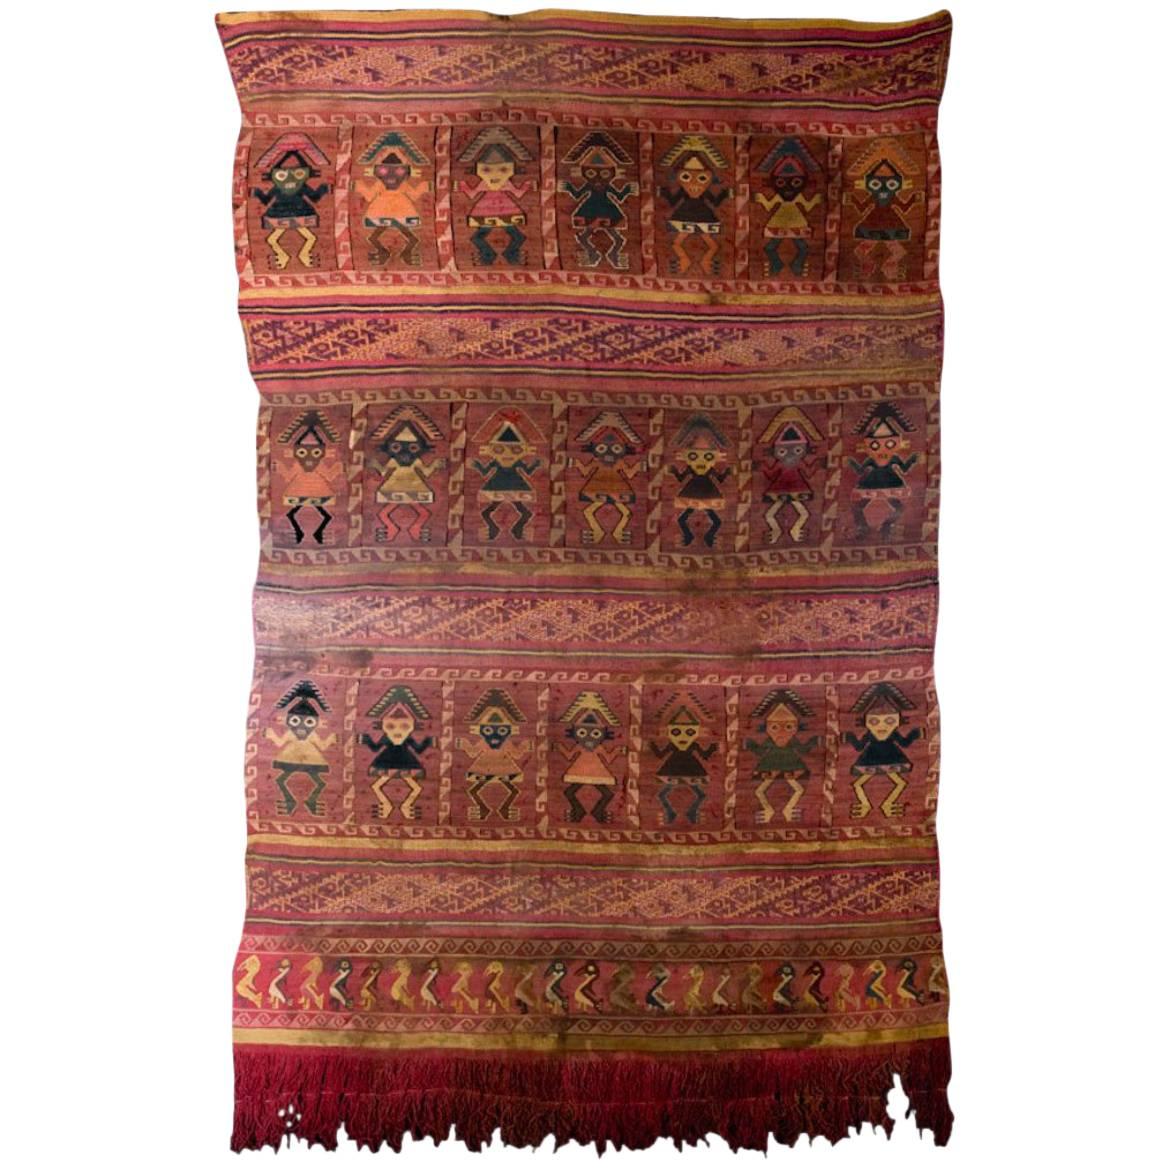 Magnifique tapisserie précolombienne de Chimu avec 21 pendentifs royaux multicolores